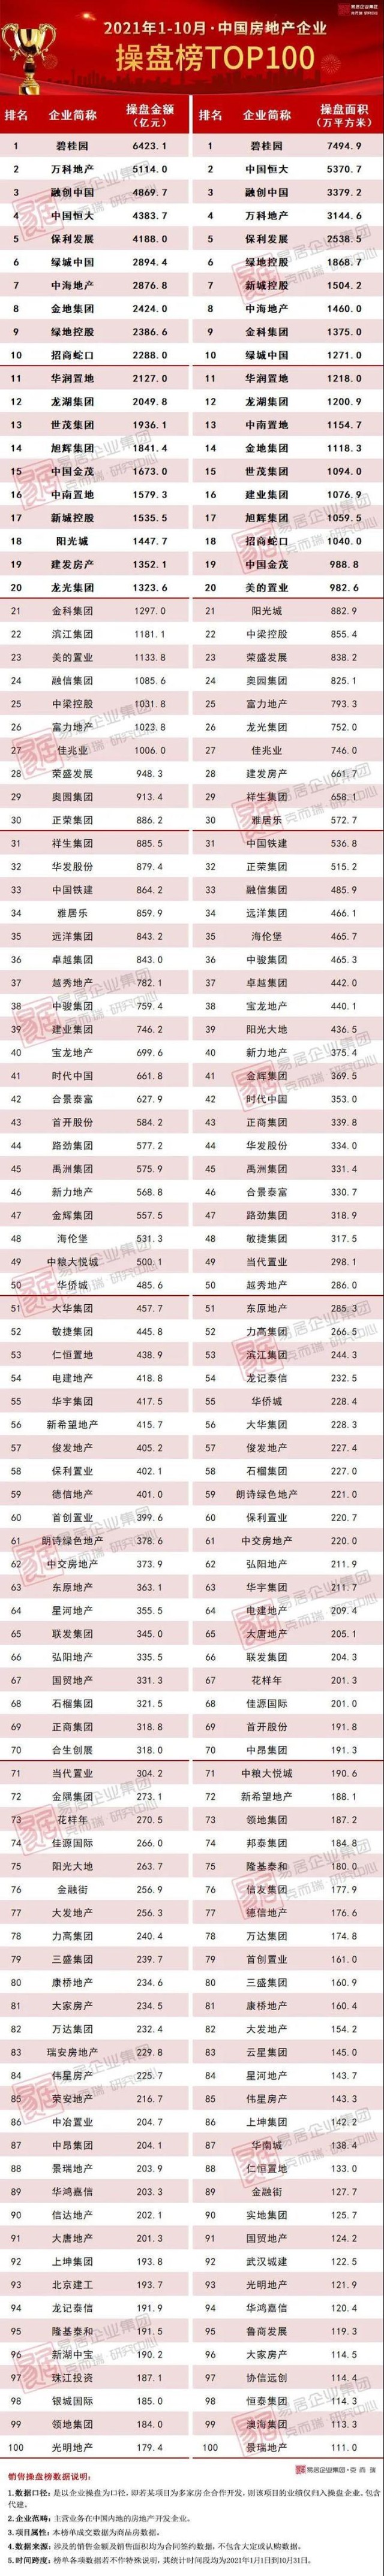 2021年110月中国房地产企业销售排行榜